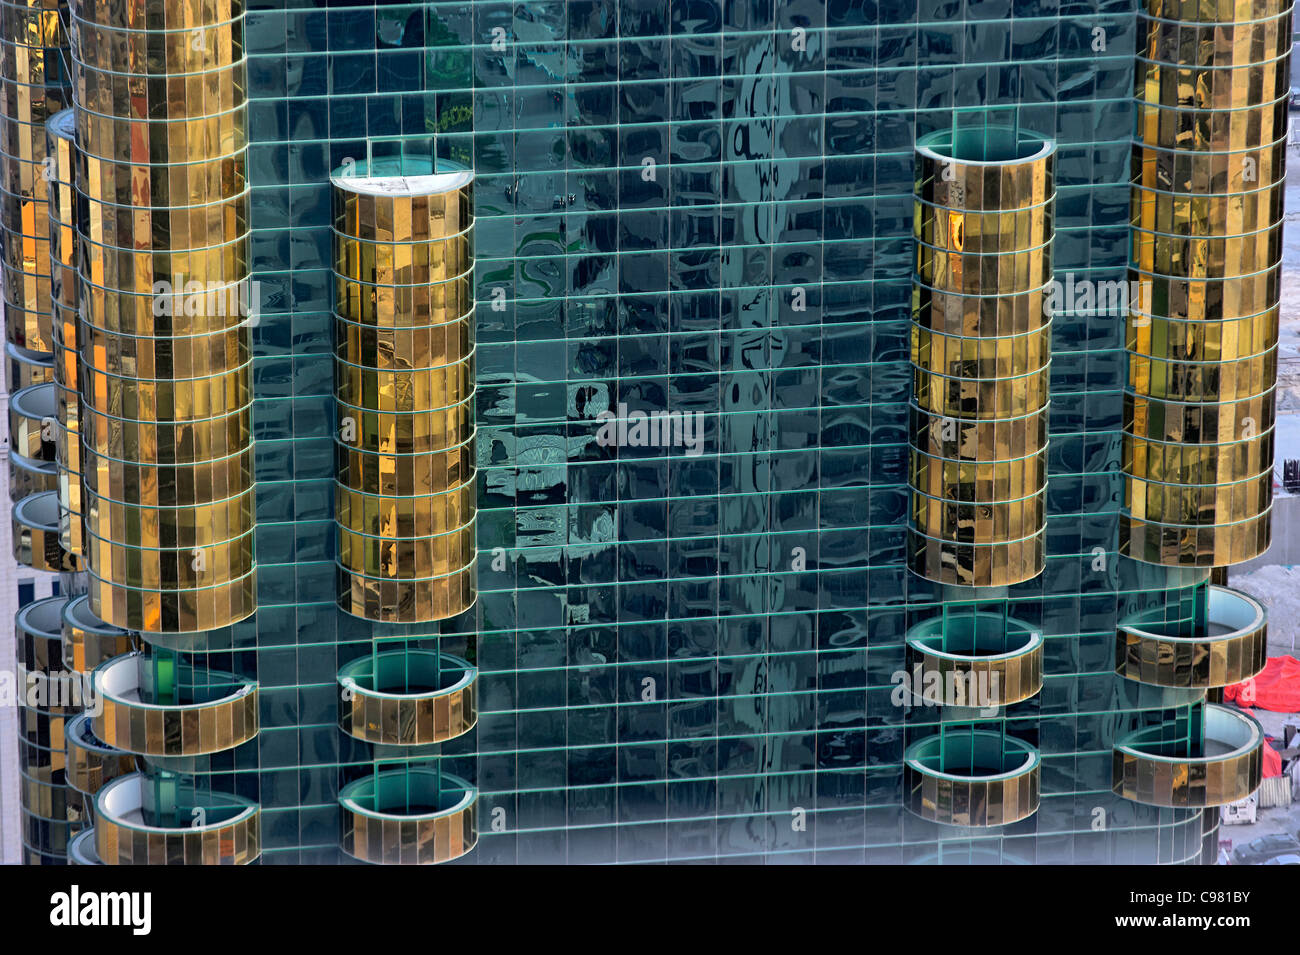 Façade, l'architecture arabe moderne, des gratte-ciel, tours, quartier financier de Dubaï, Dubaï, Émirats arabes unis, Moyen Orient Banque D'Images